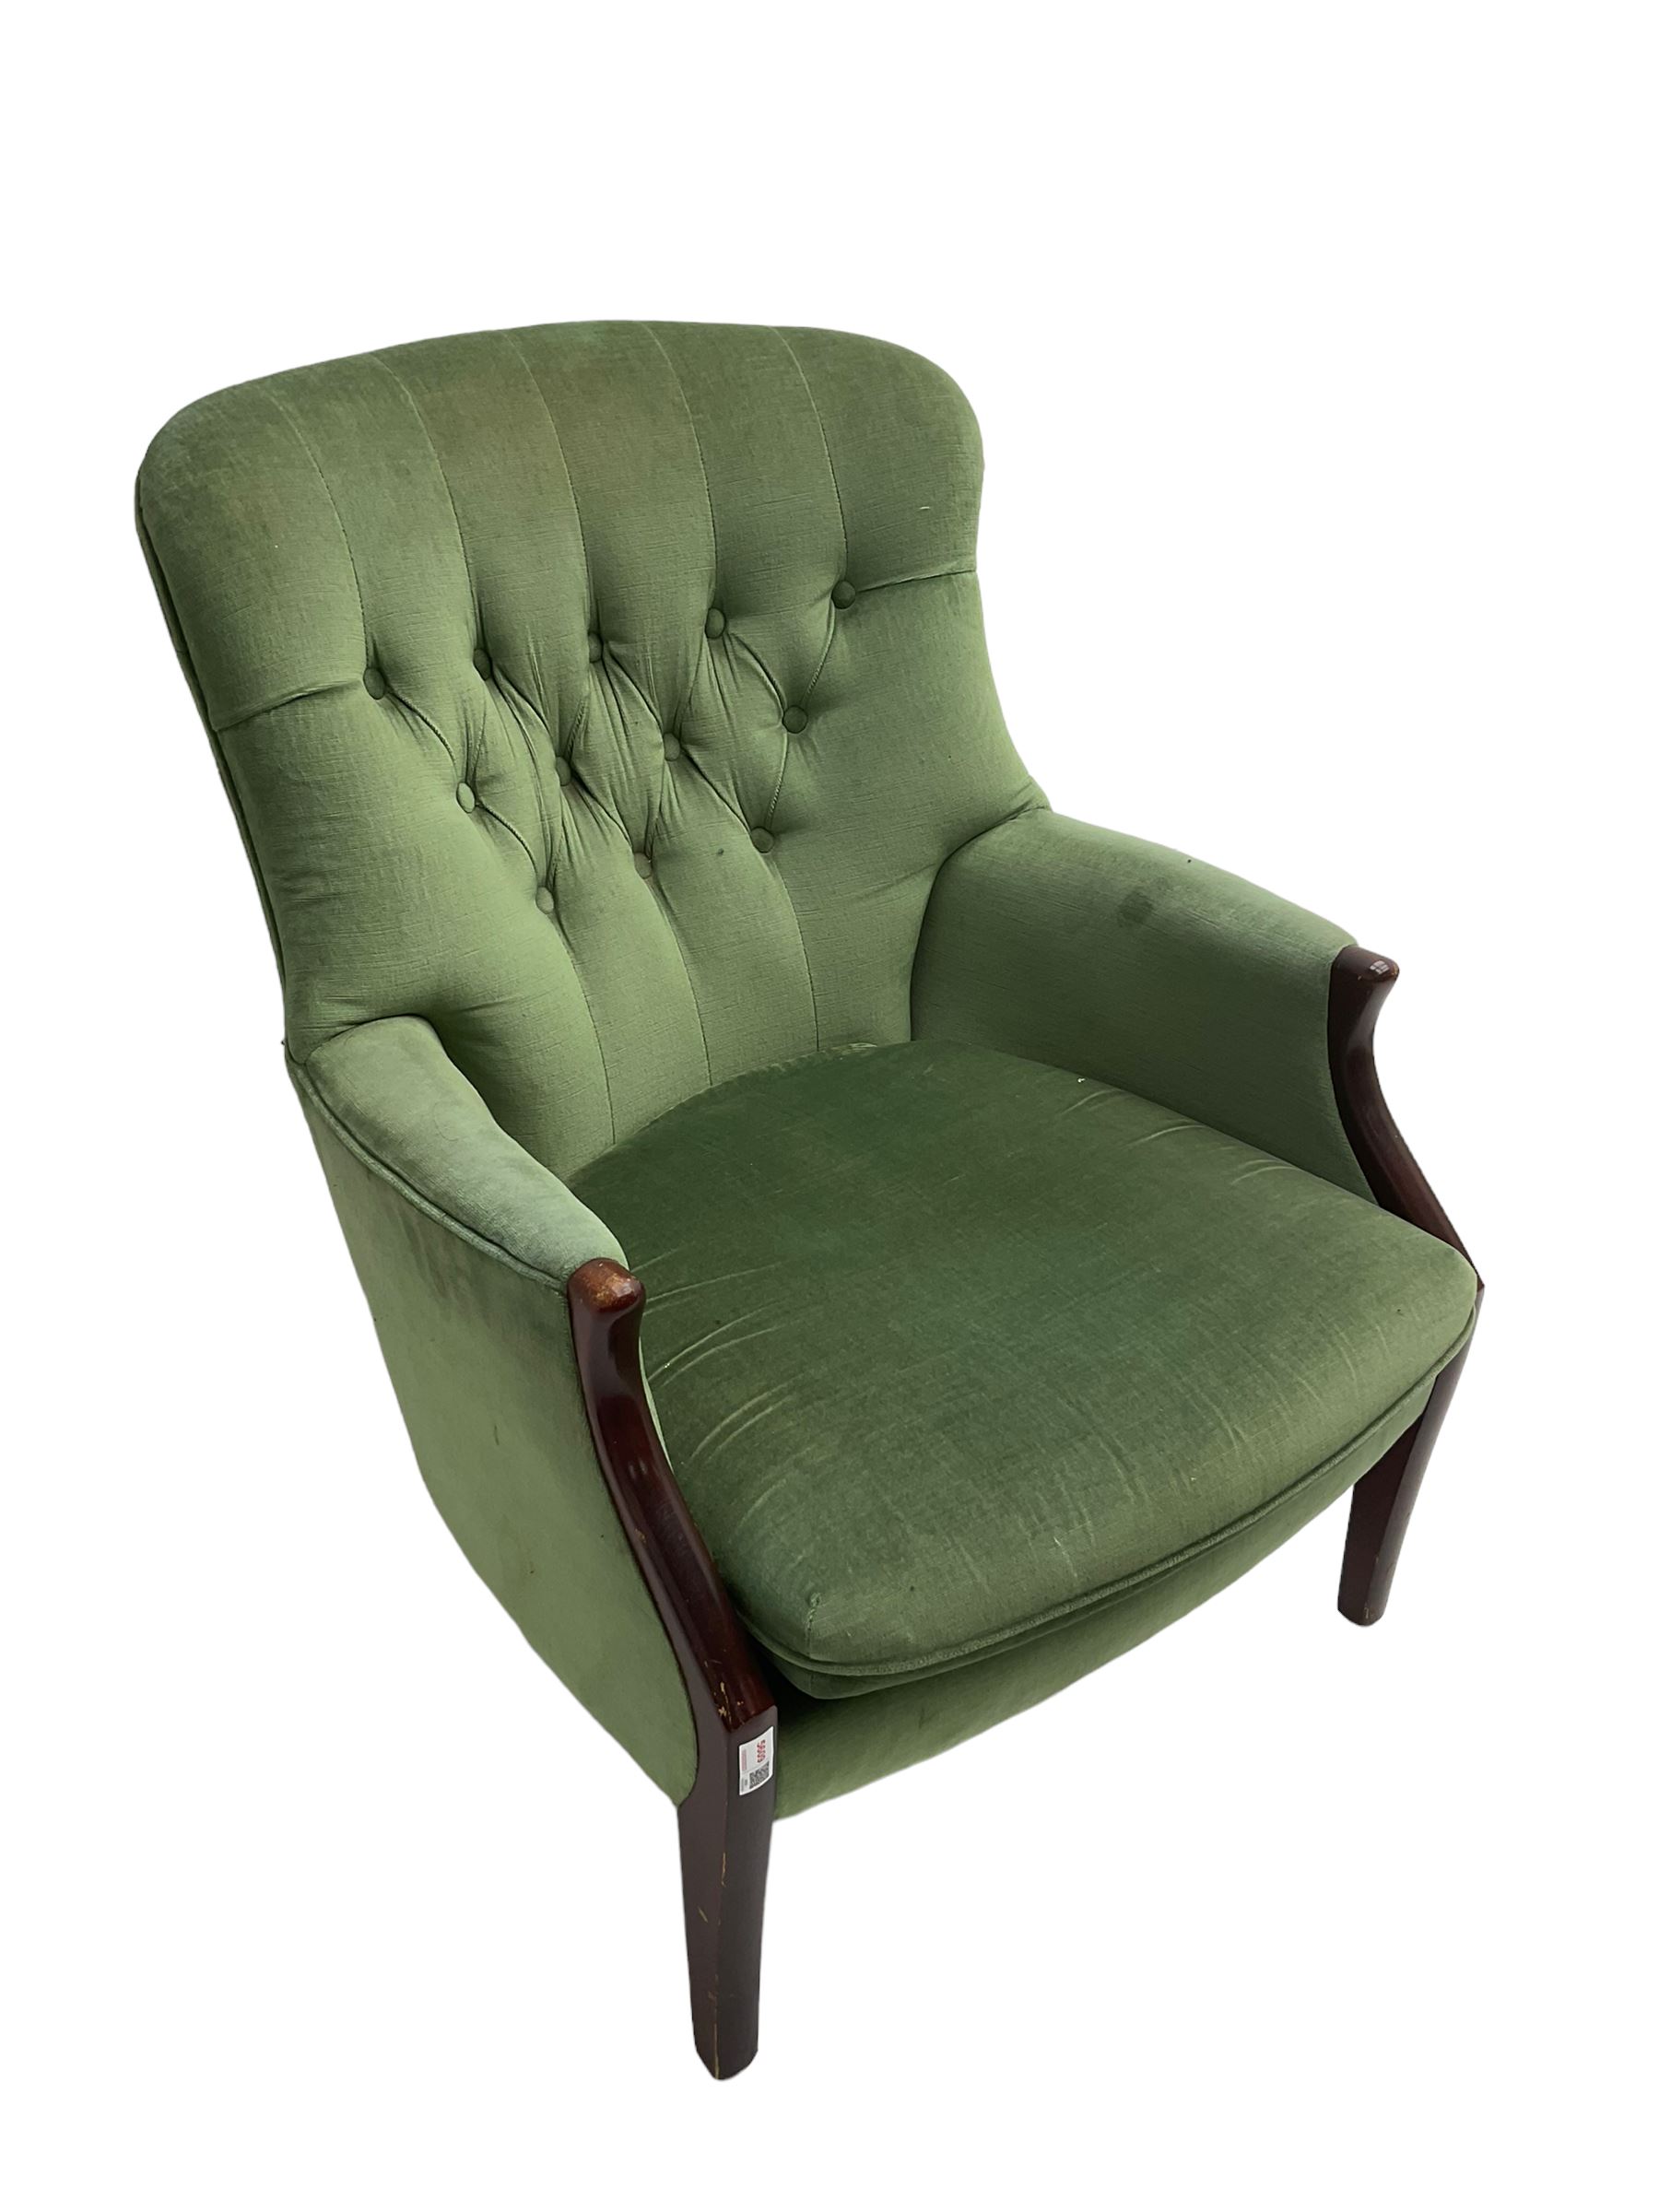 Parker Knoll - hardwood framed armchair - Image 5 of 6